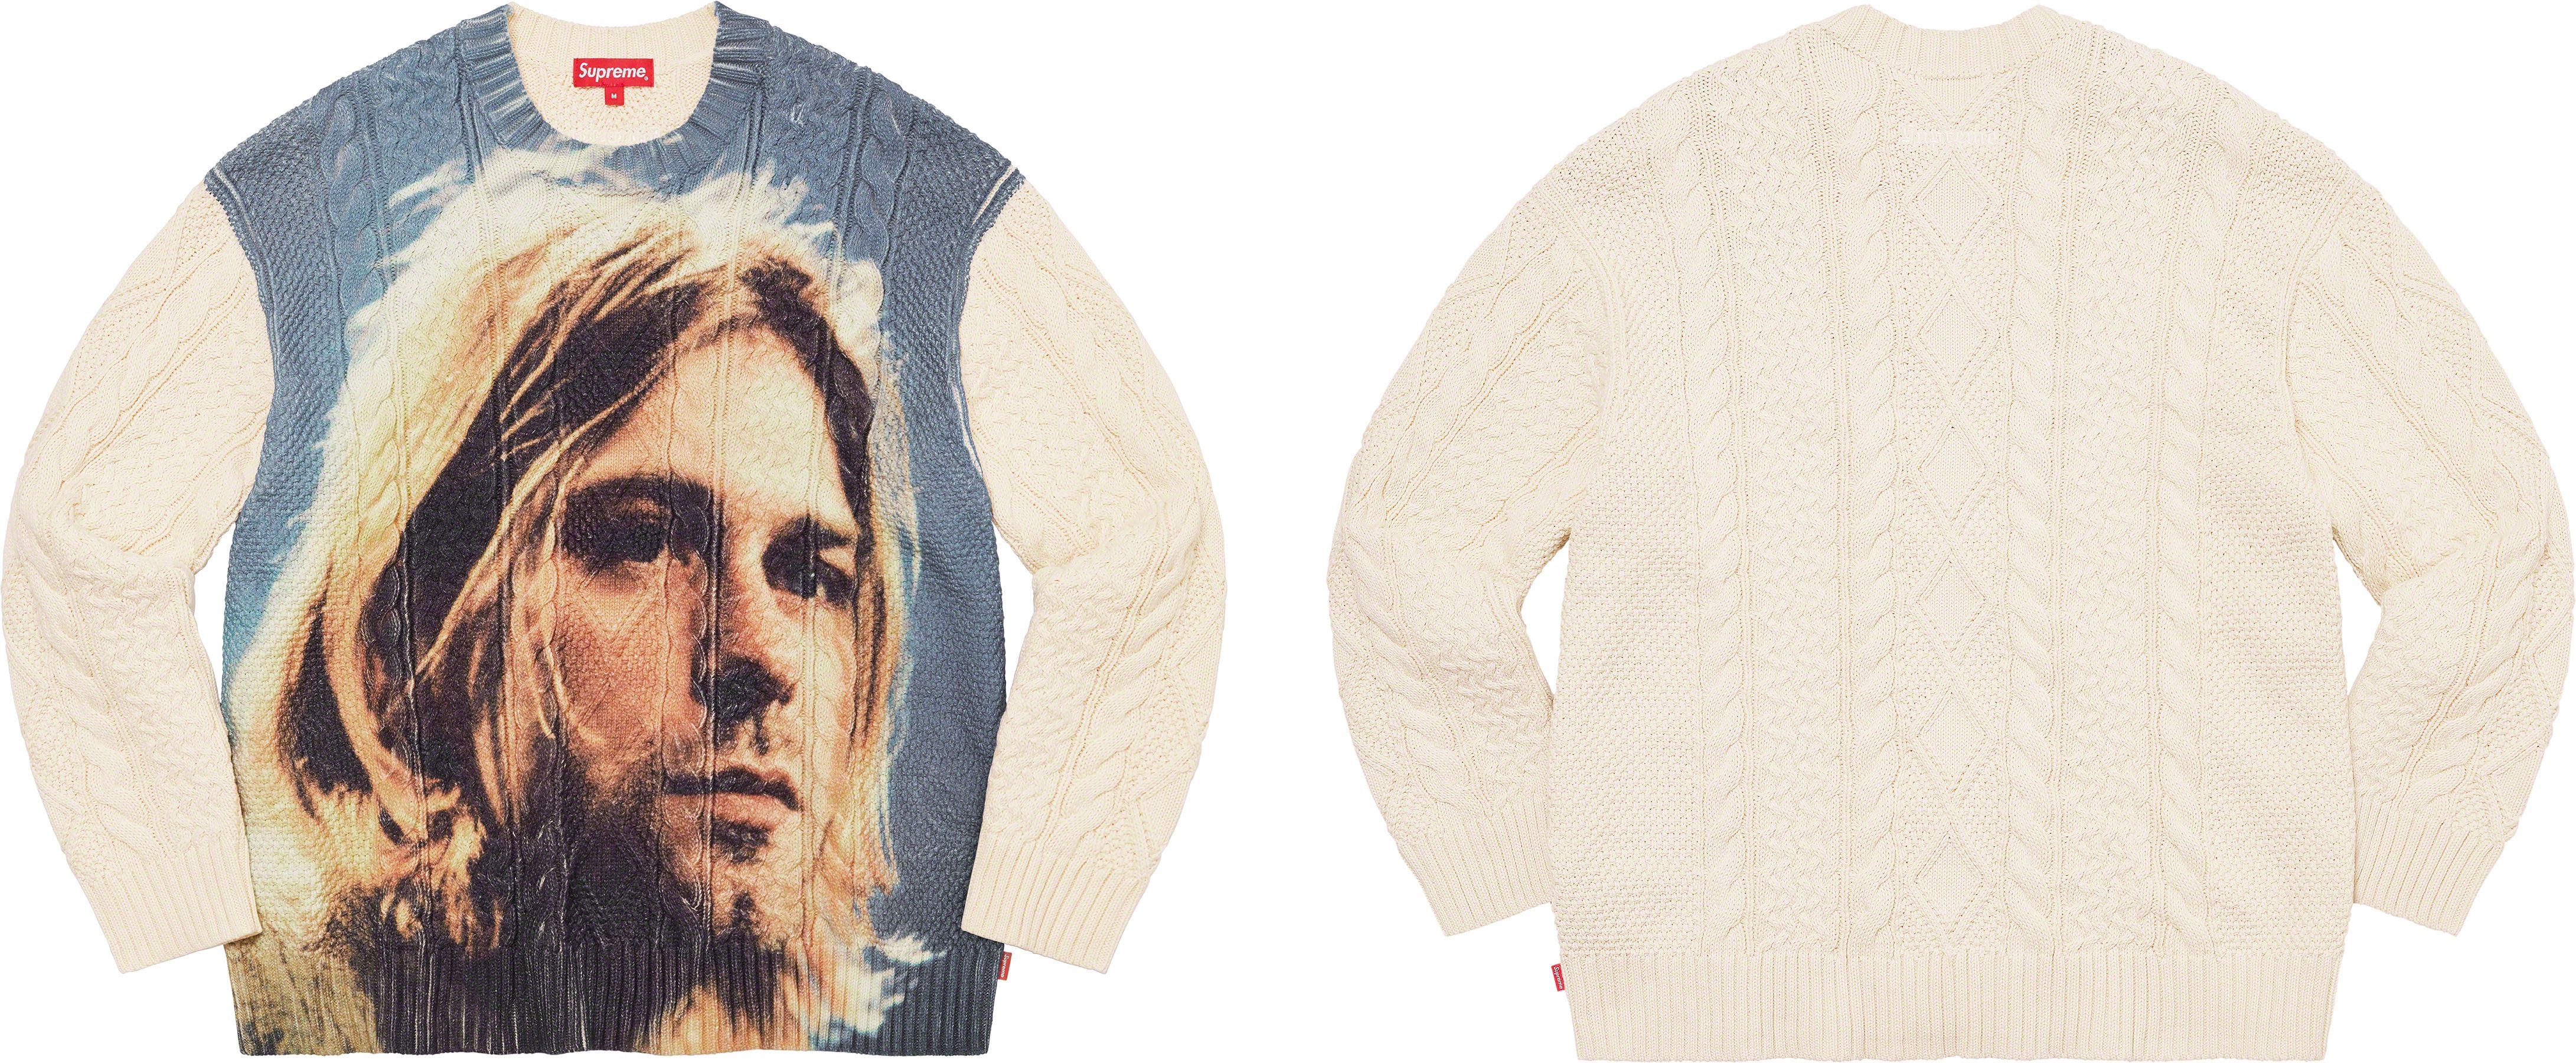 新品 Lサイズ Supreme Kurt Cobain Sweater